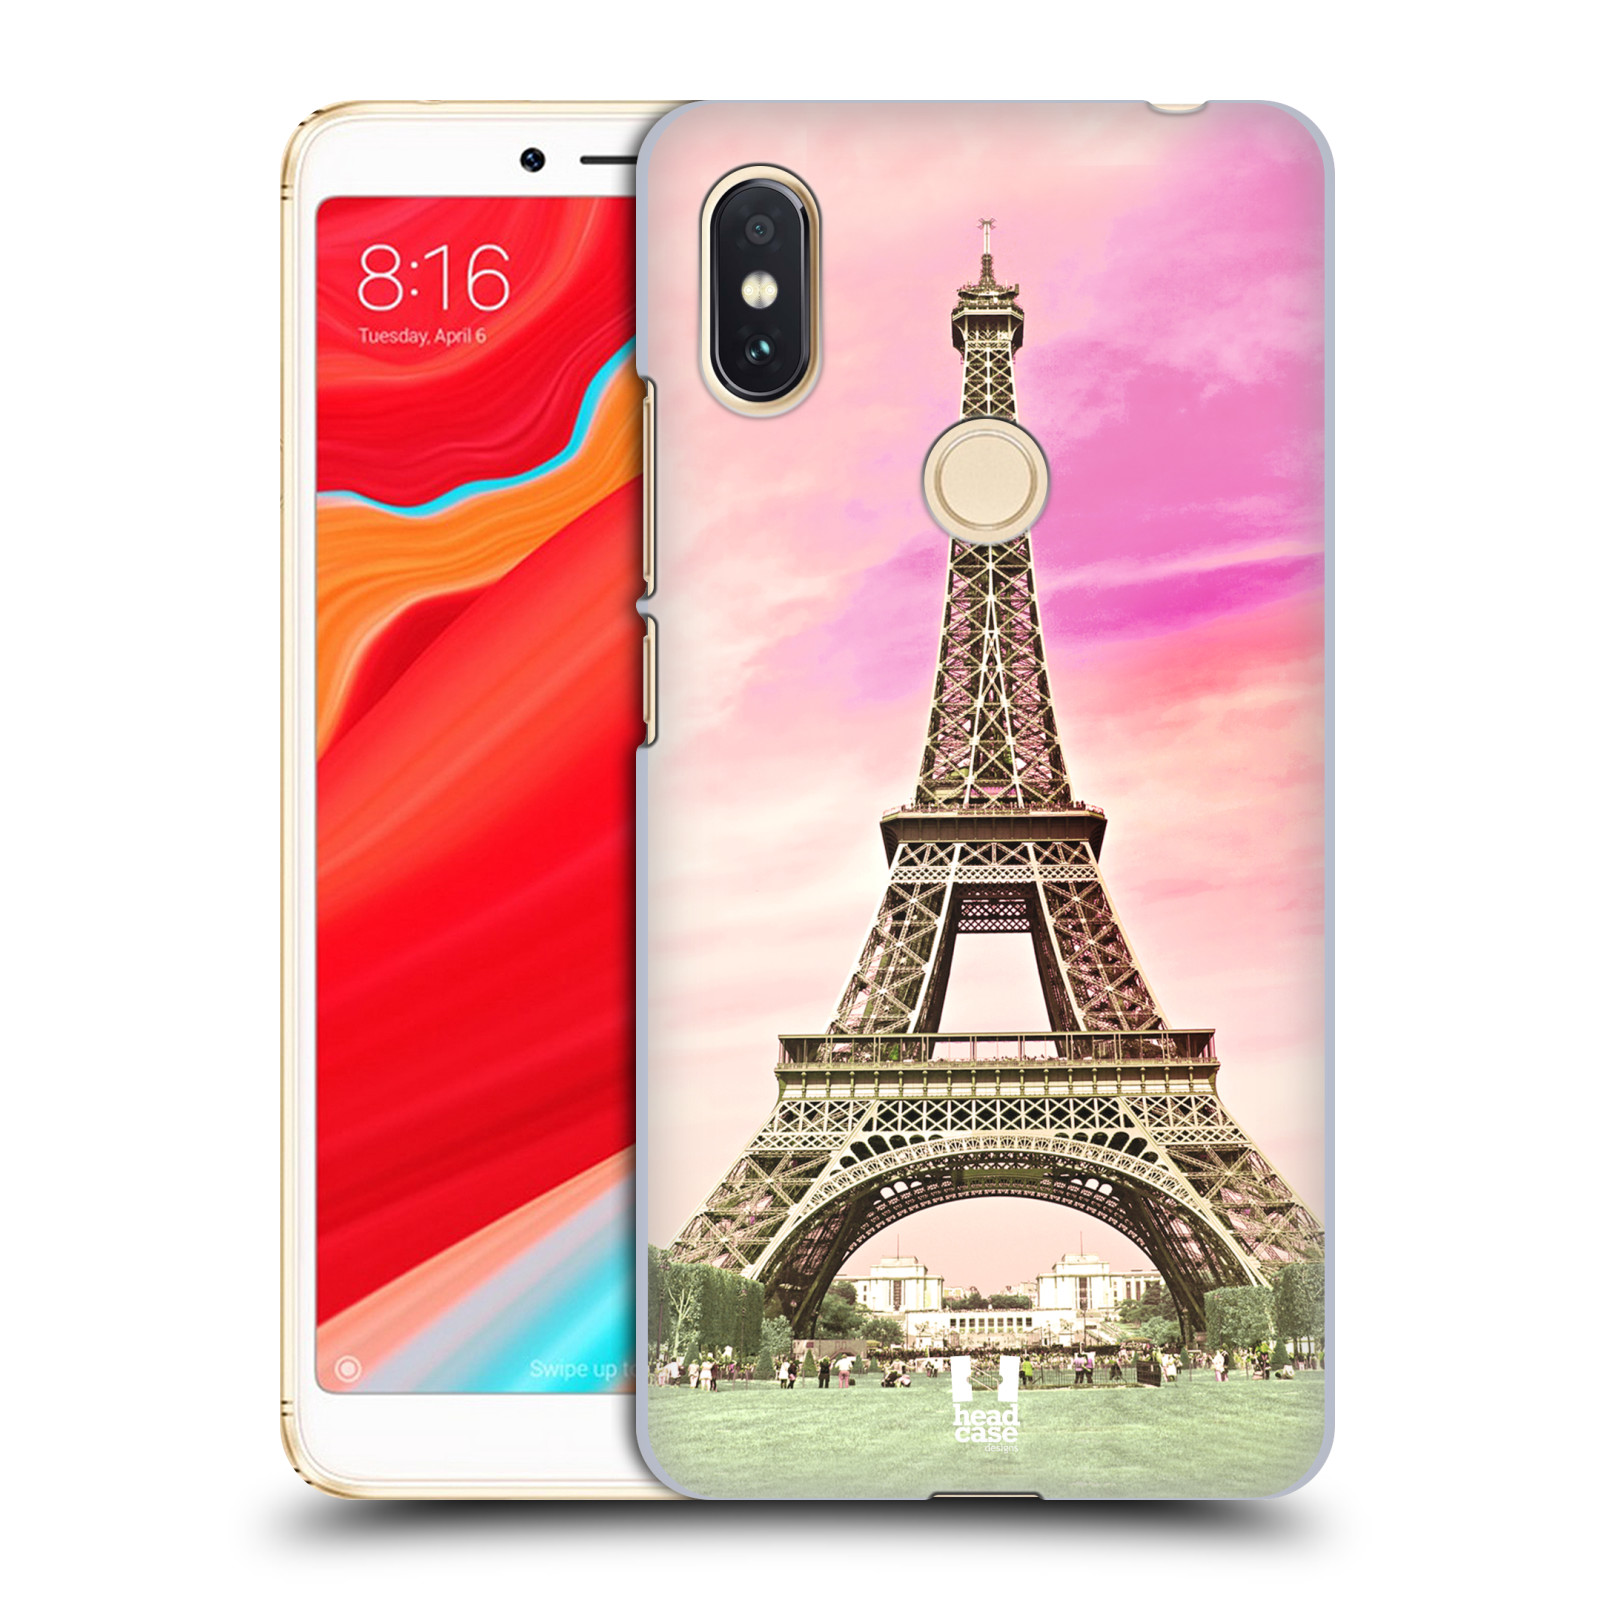 Pouzdro na mobil Xiaomi Redmi S2 - HEAD CASE - historická místa Eiffelova věž Paříž